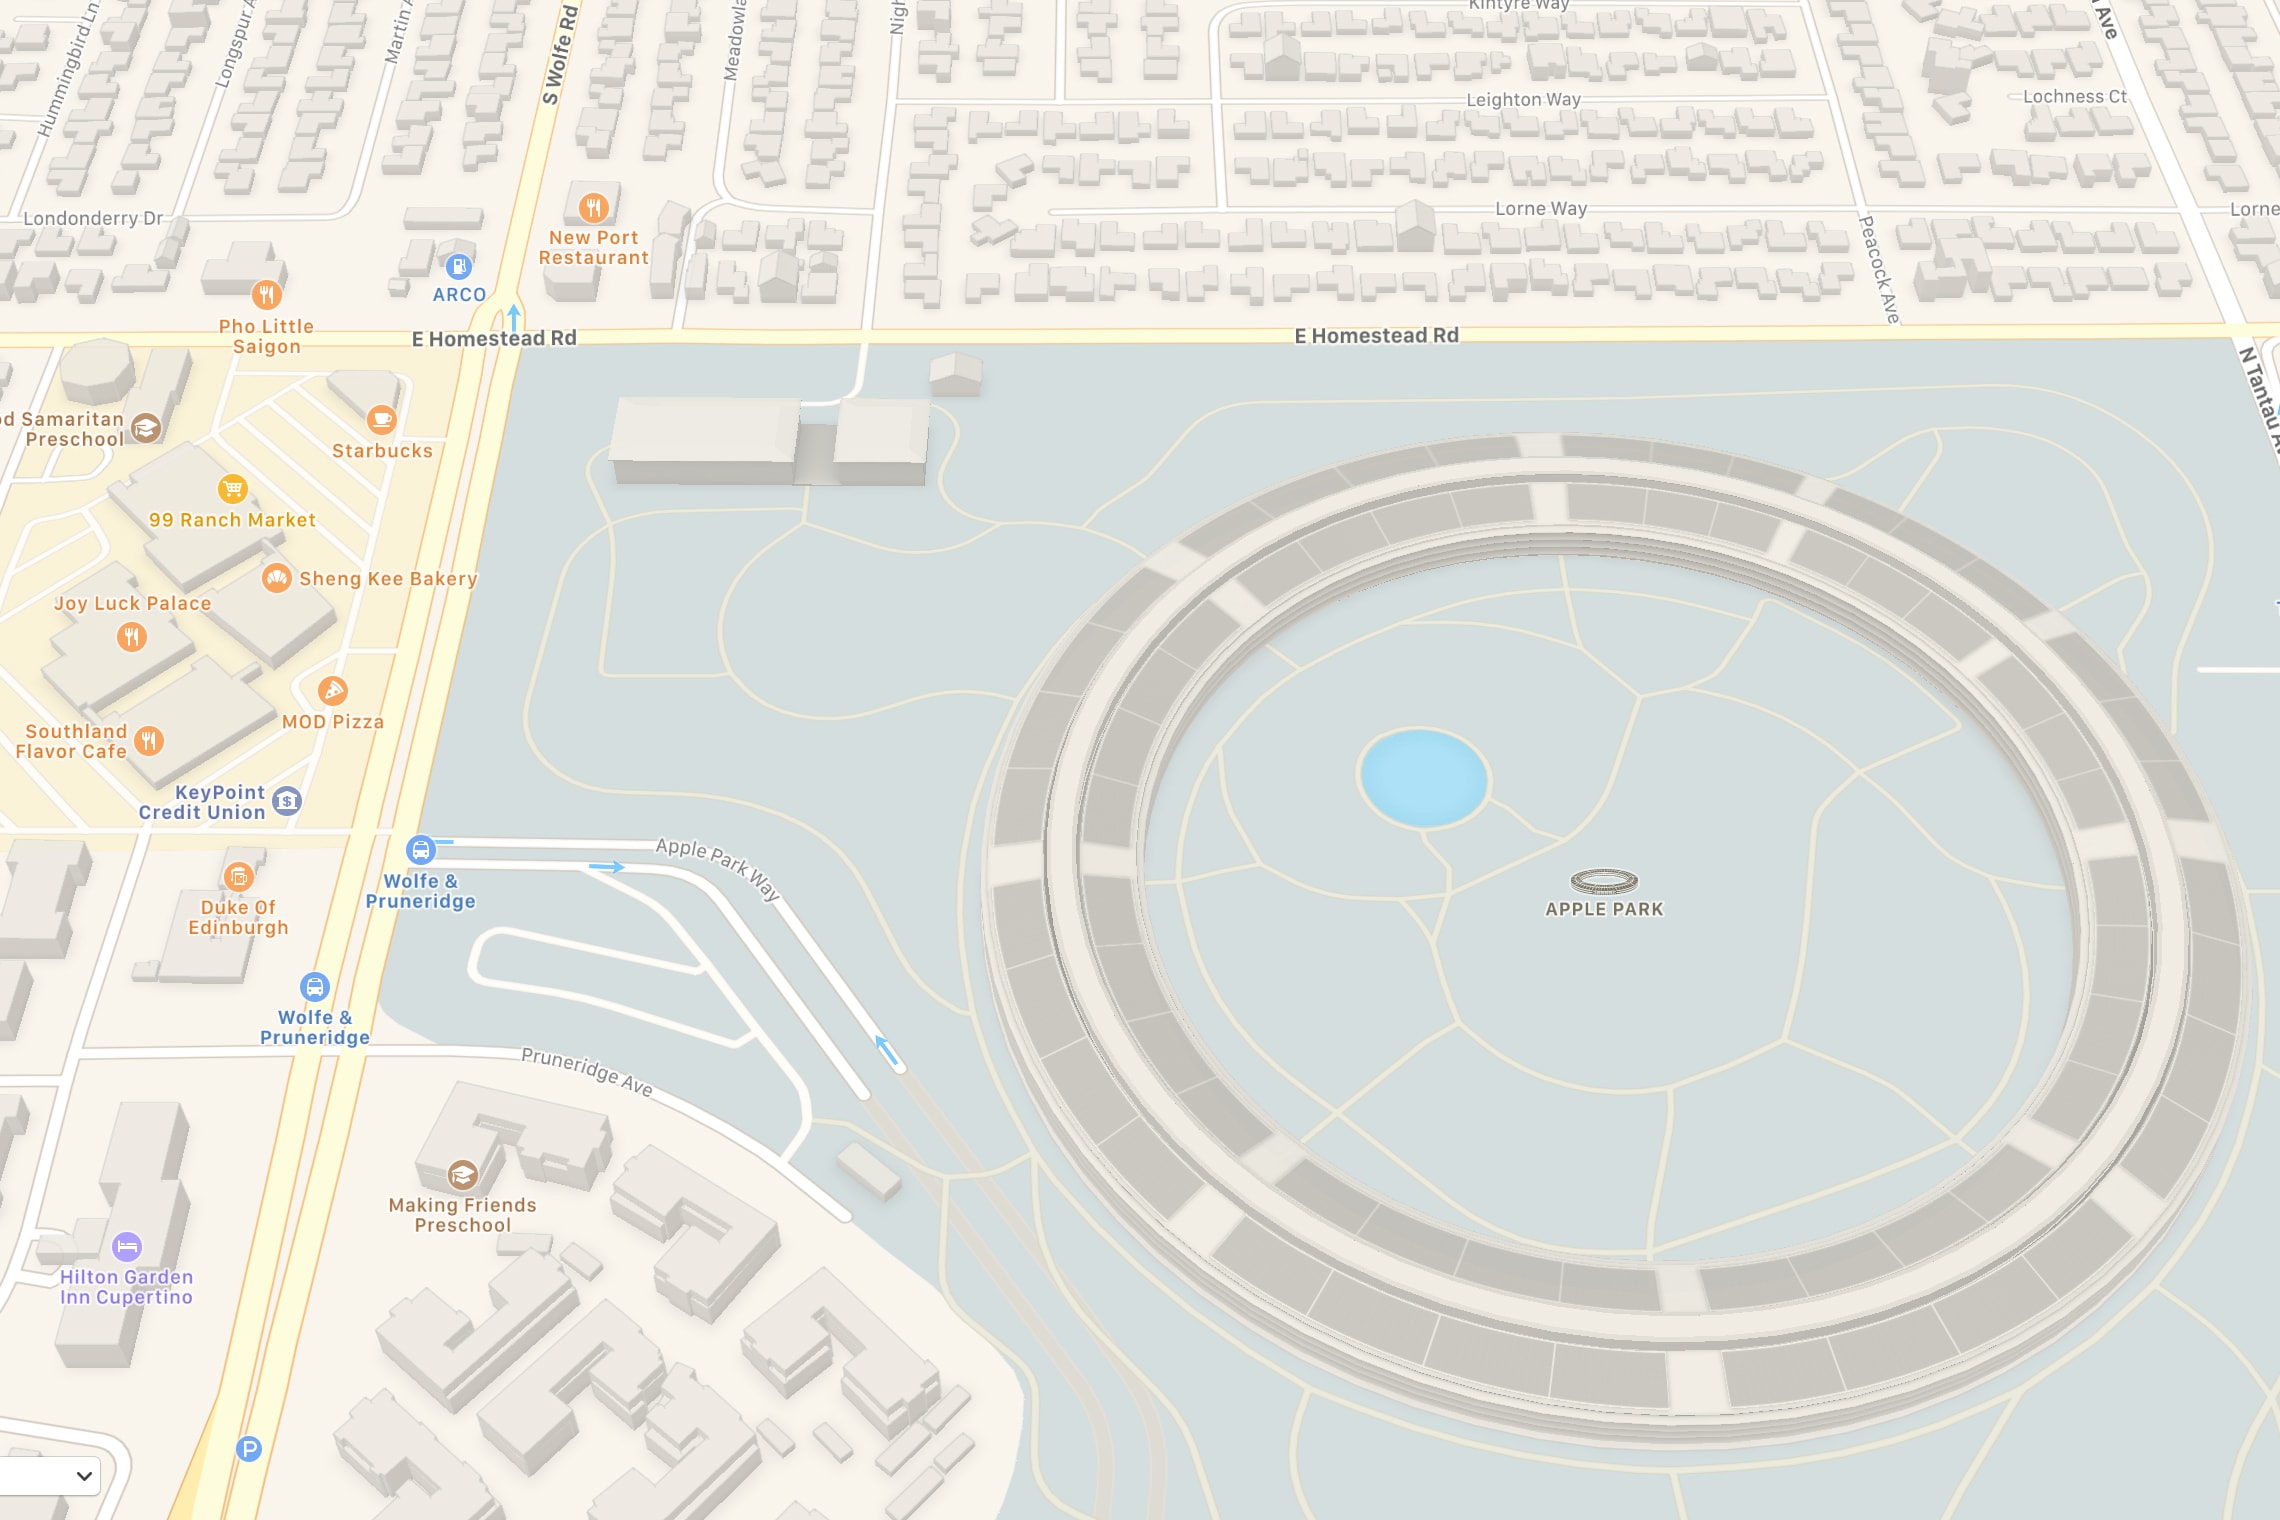 Apple Maps Apple Park 3D Model View